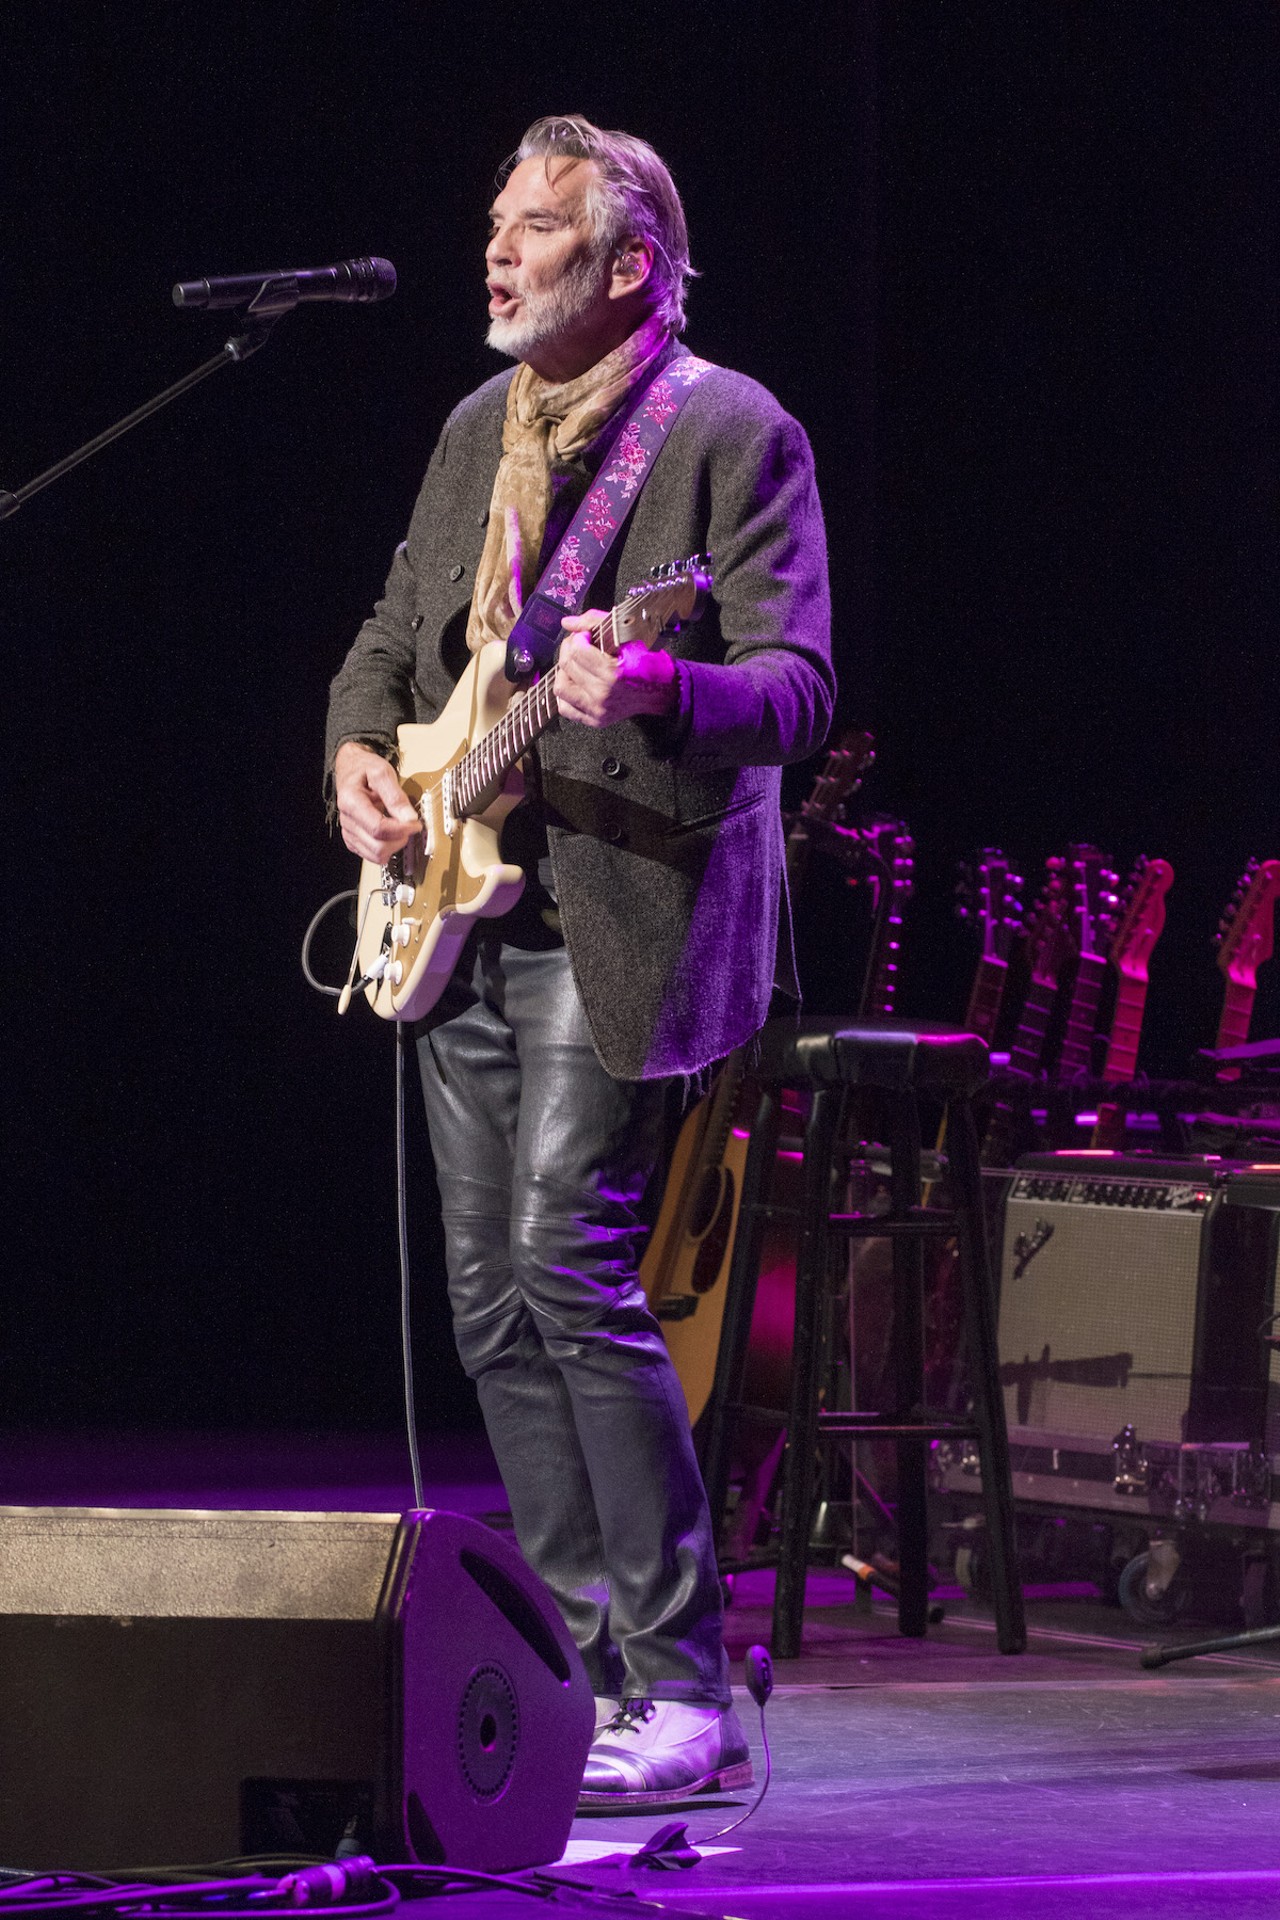 Photos: Kenny Loggins kicks off final tour at Sarasota's Van Wezel Performing Arts Hall